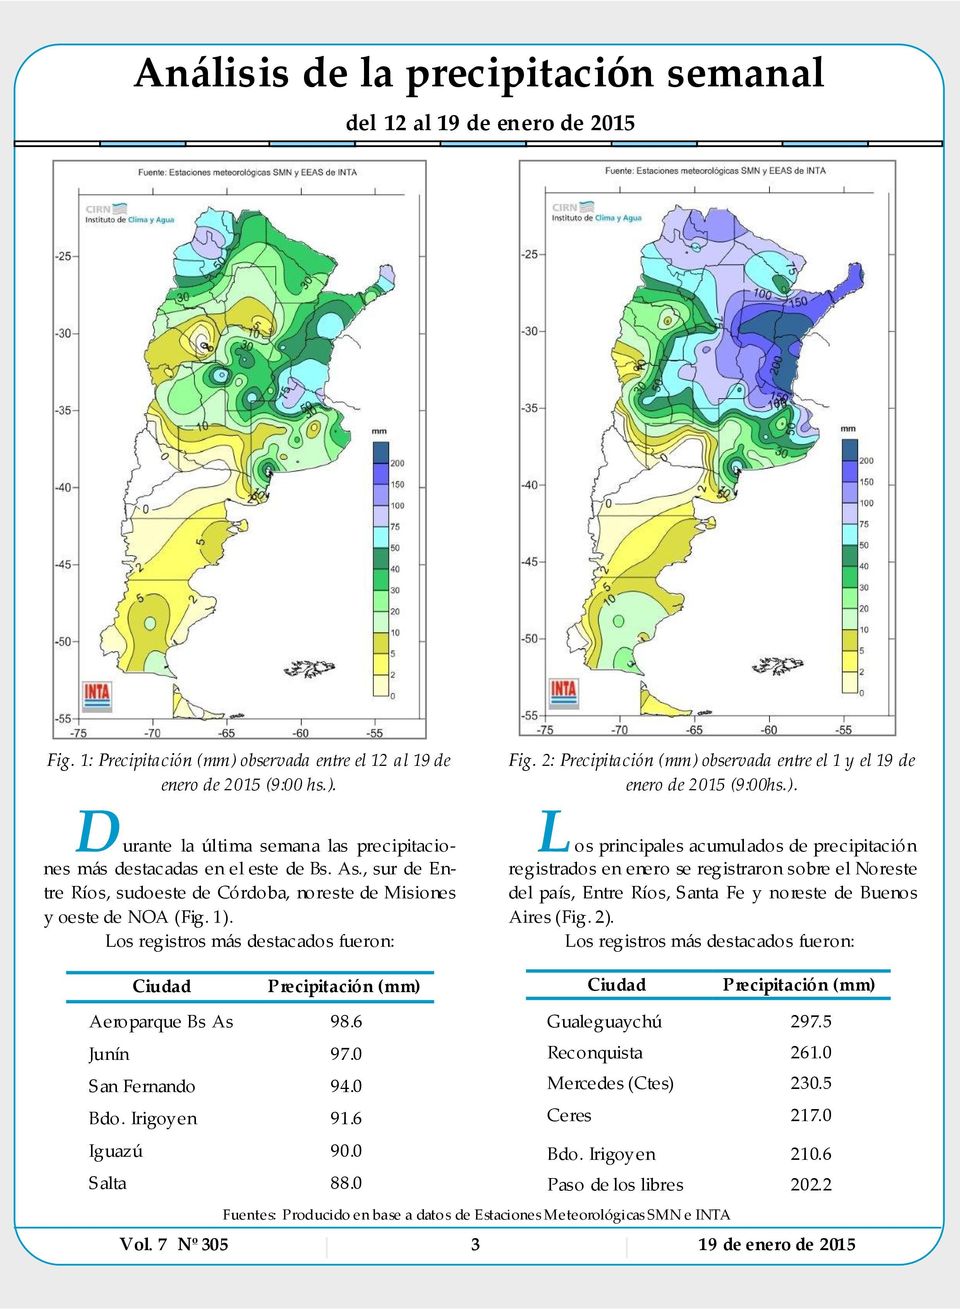 Los registros más destacados fueron: L os principales acumulados de precipitación registrados en enero se registraron sobre el Noreste del país, Entre Ríos, Santa Fe y noreste de Buenos Aires (Fig.